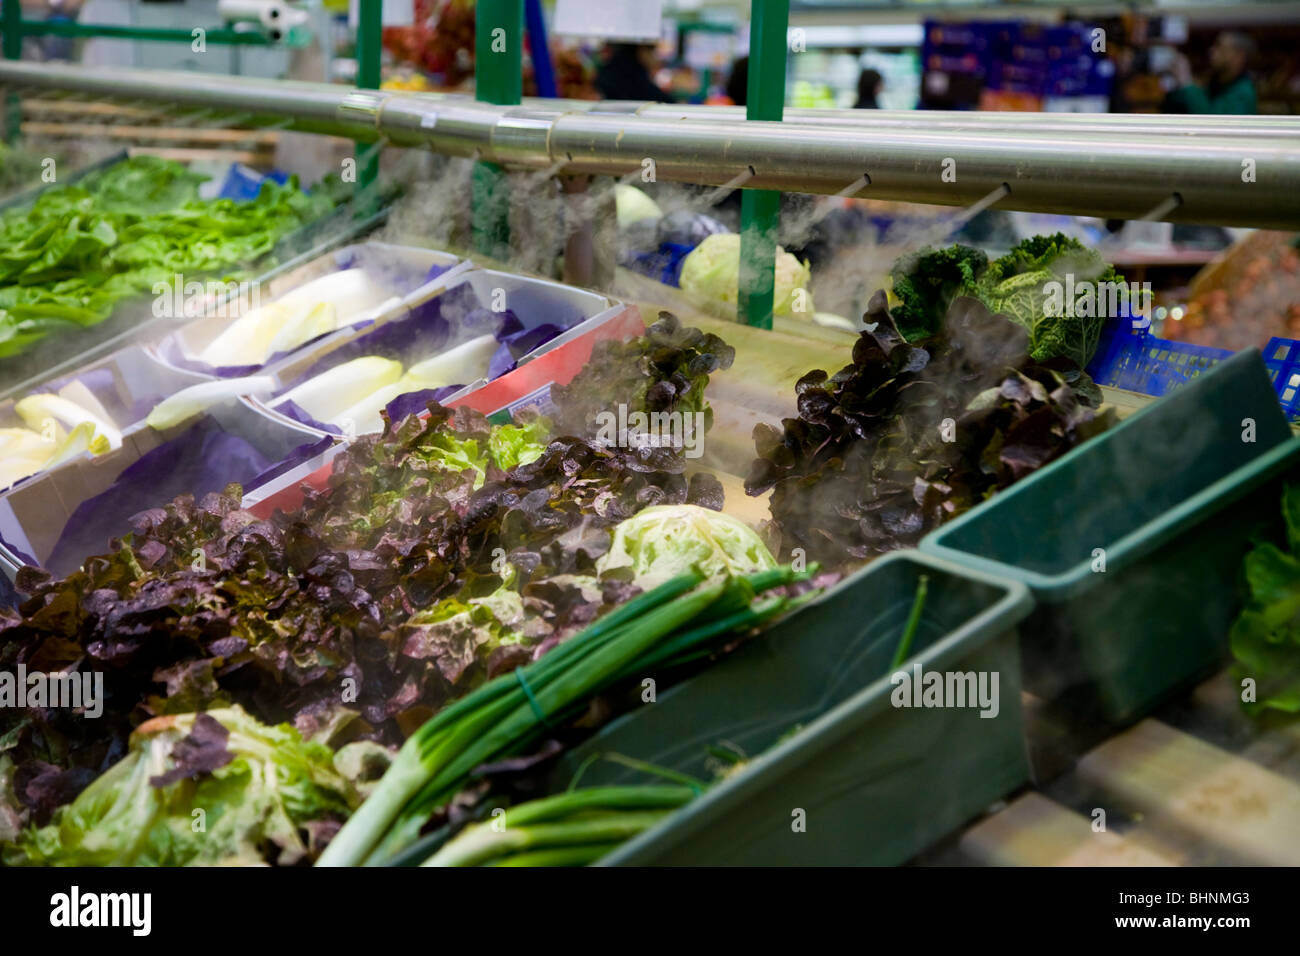 Un display di insalata fresca e verdure / negozi di generi alimentari di essere atomizzata in vapore acqueo per freschezza, in un supermercato francese. La Francia. Foto Stock